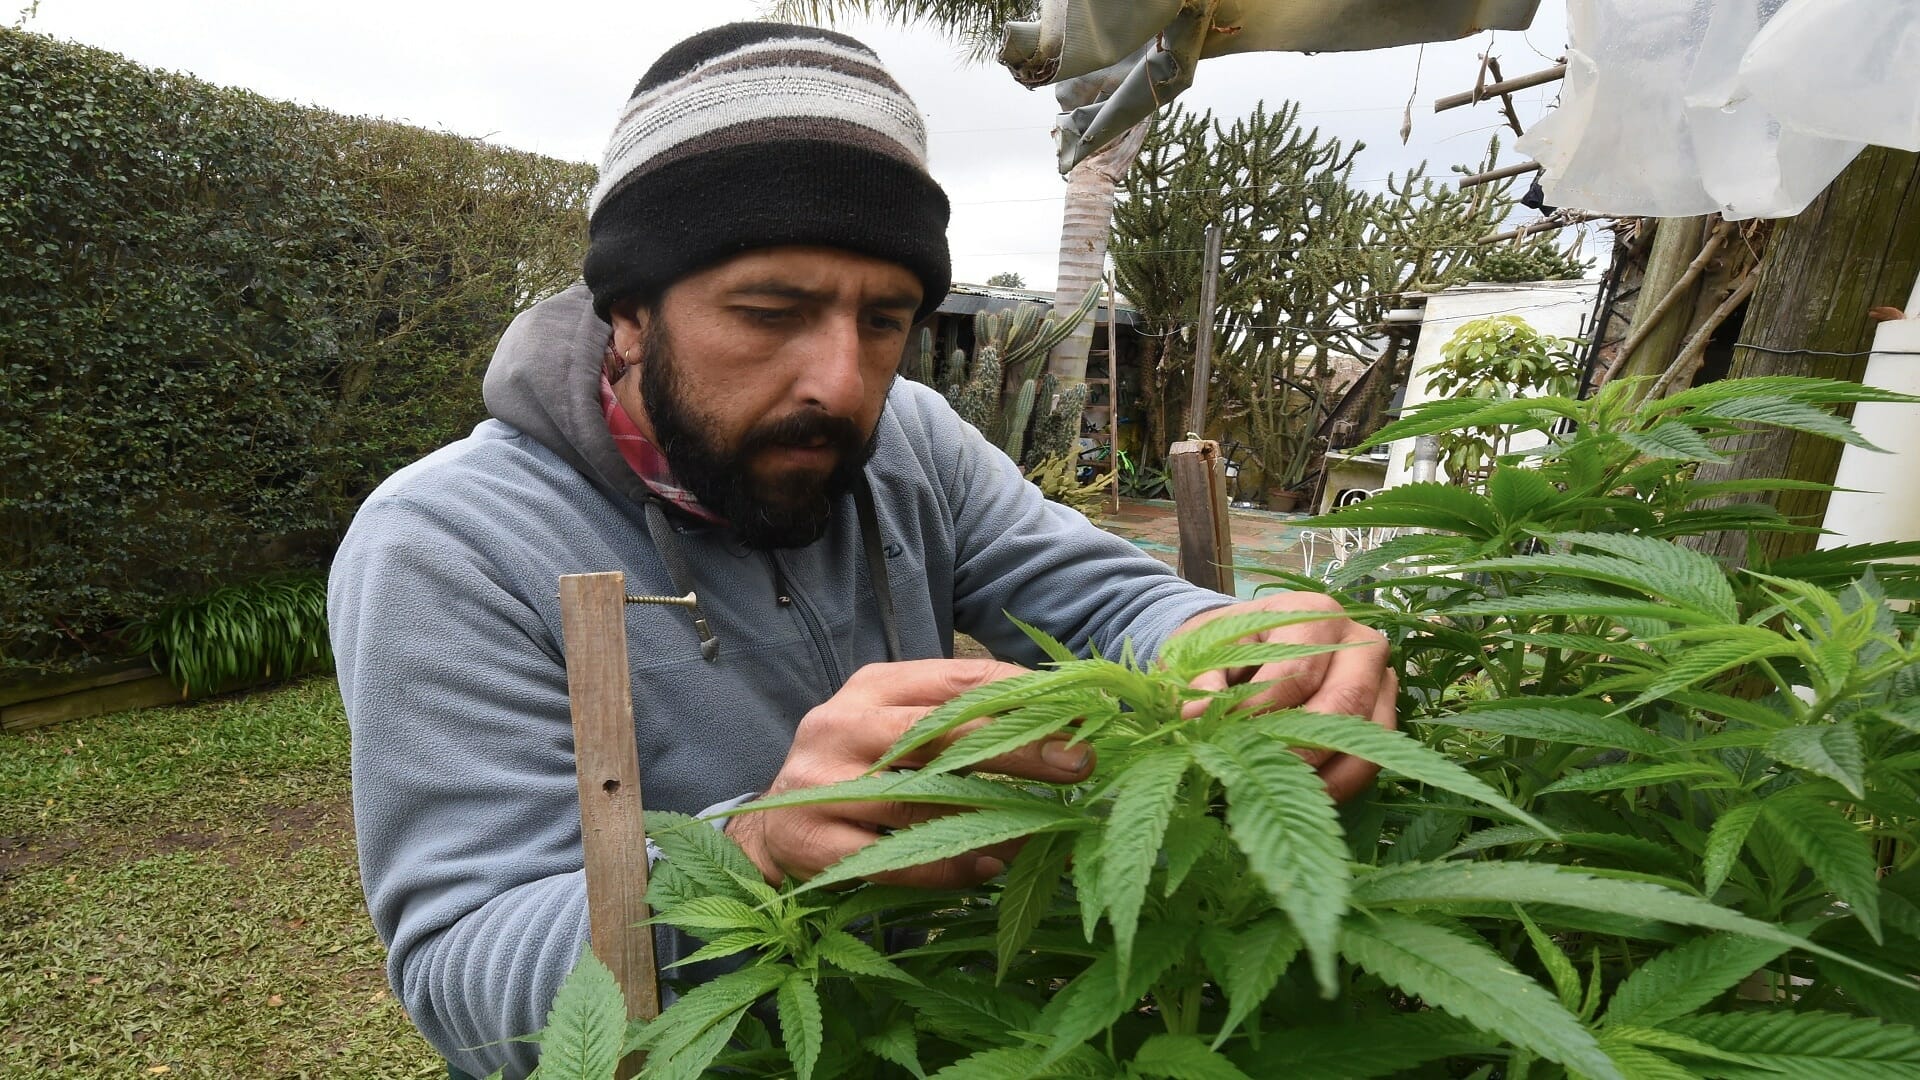 المغرب يقنن زراعة القنب الهندي لأجل الاستخدامات الطبية watanserb.com